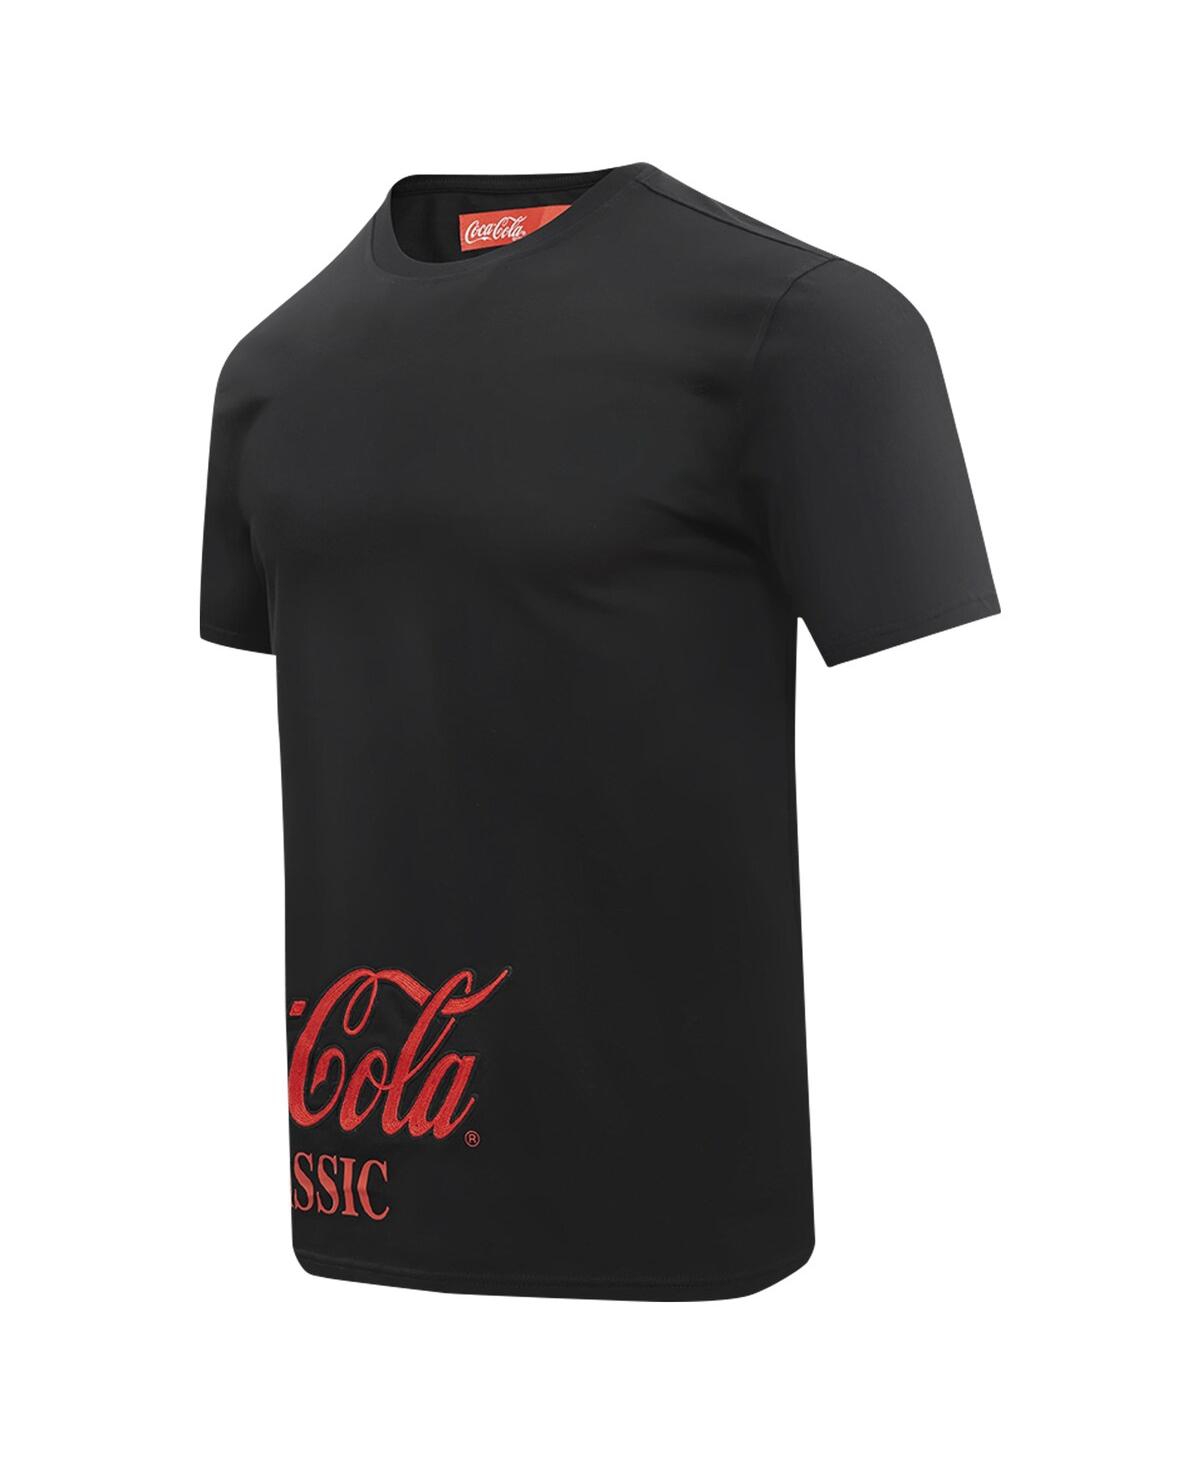 Shop Freeze Max Men's Black Coca-cola Classic T-shirt